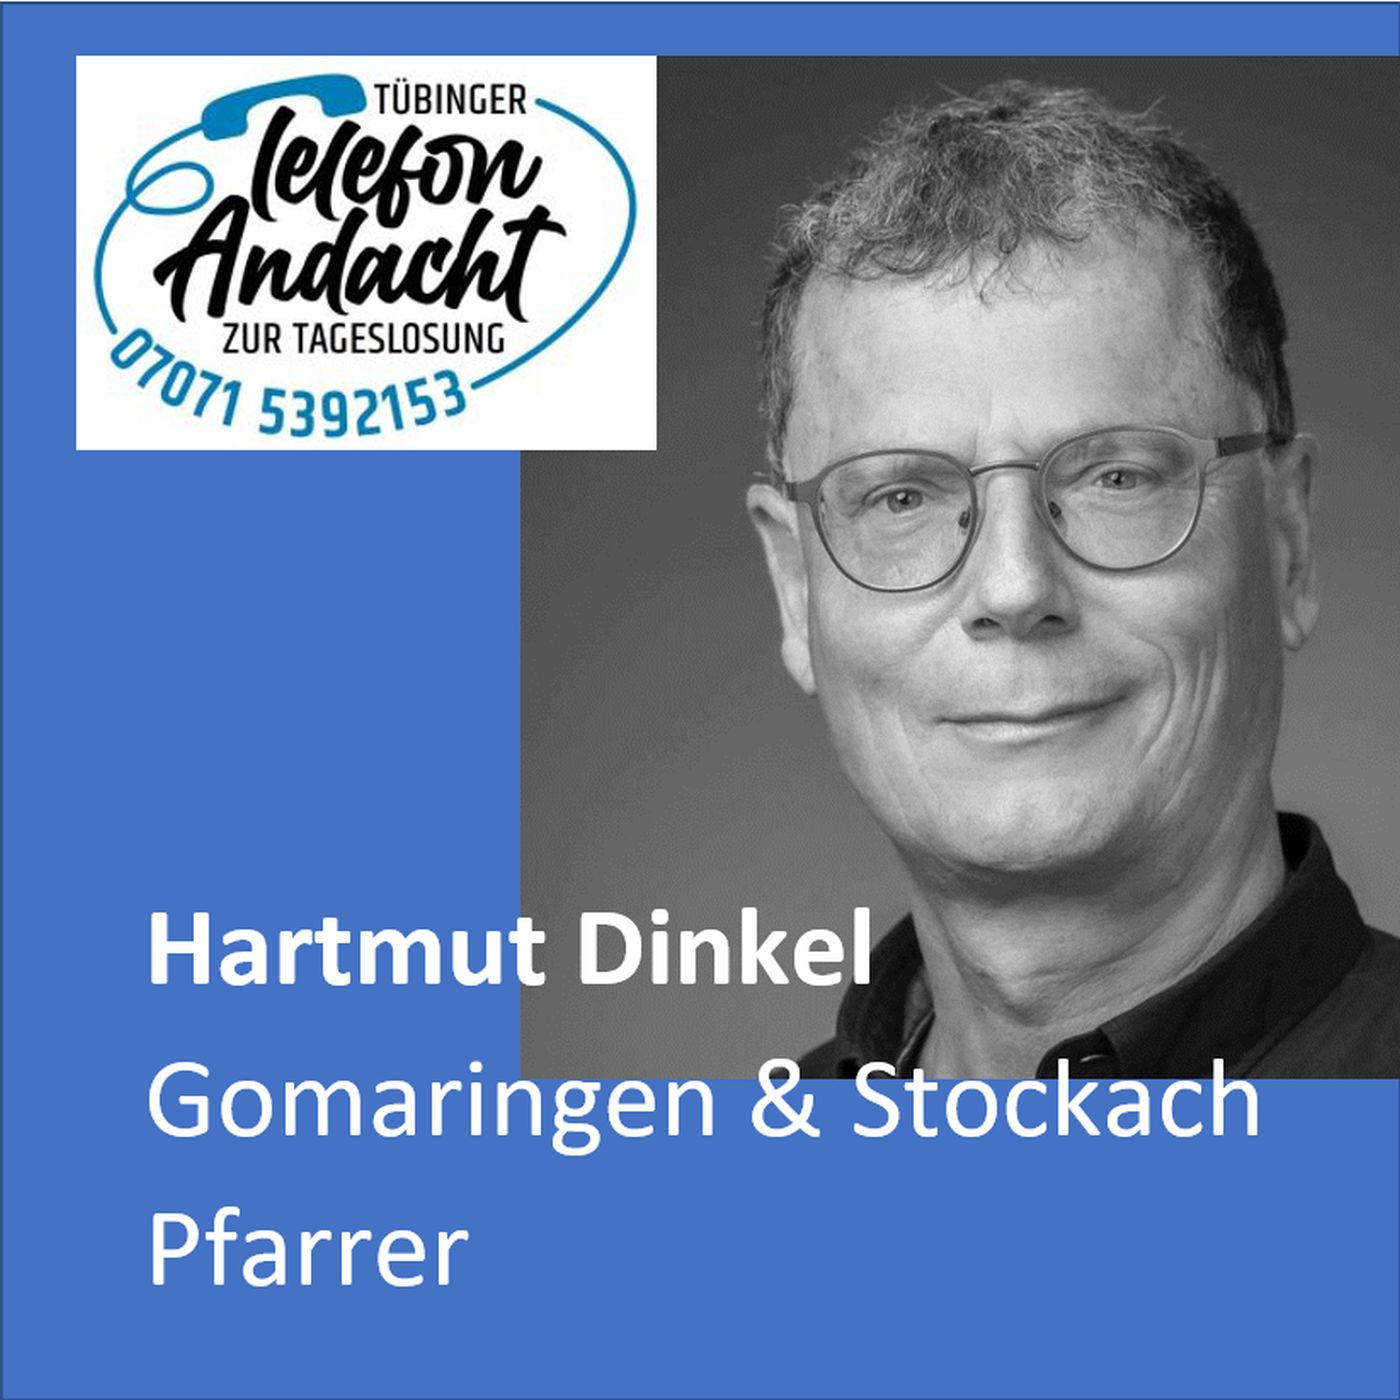 23 05 18 Hartmut Dinkel